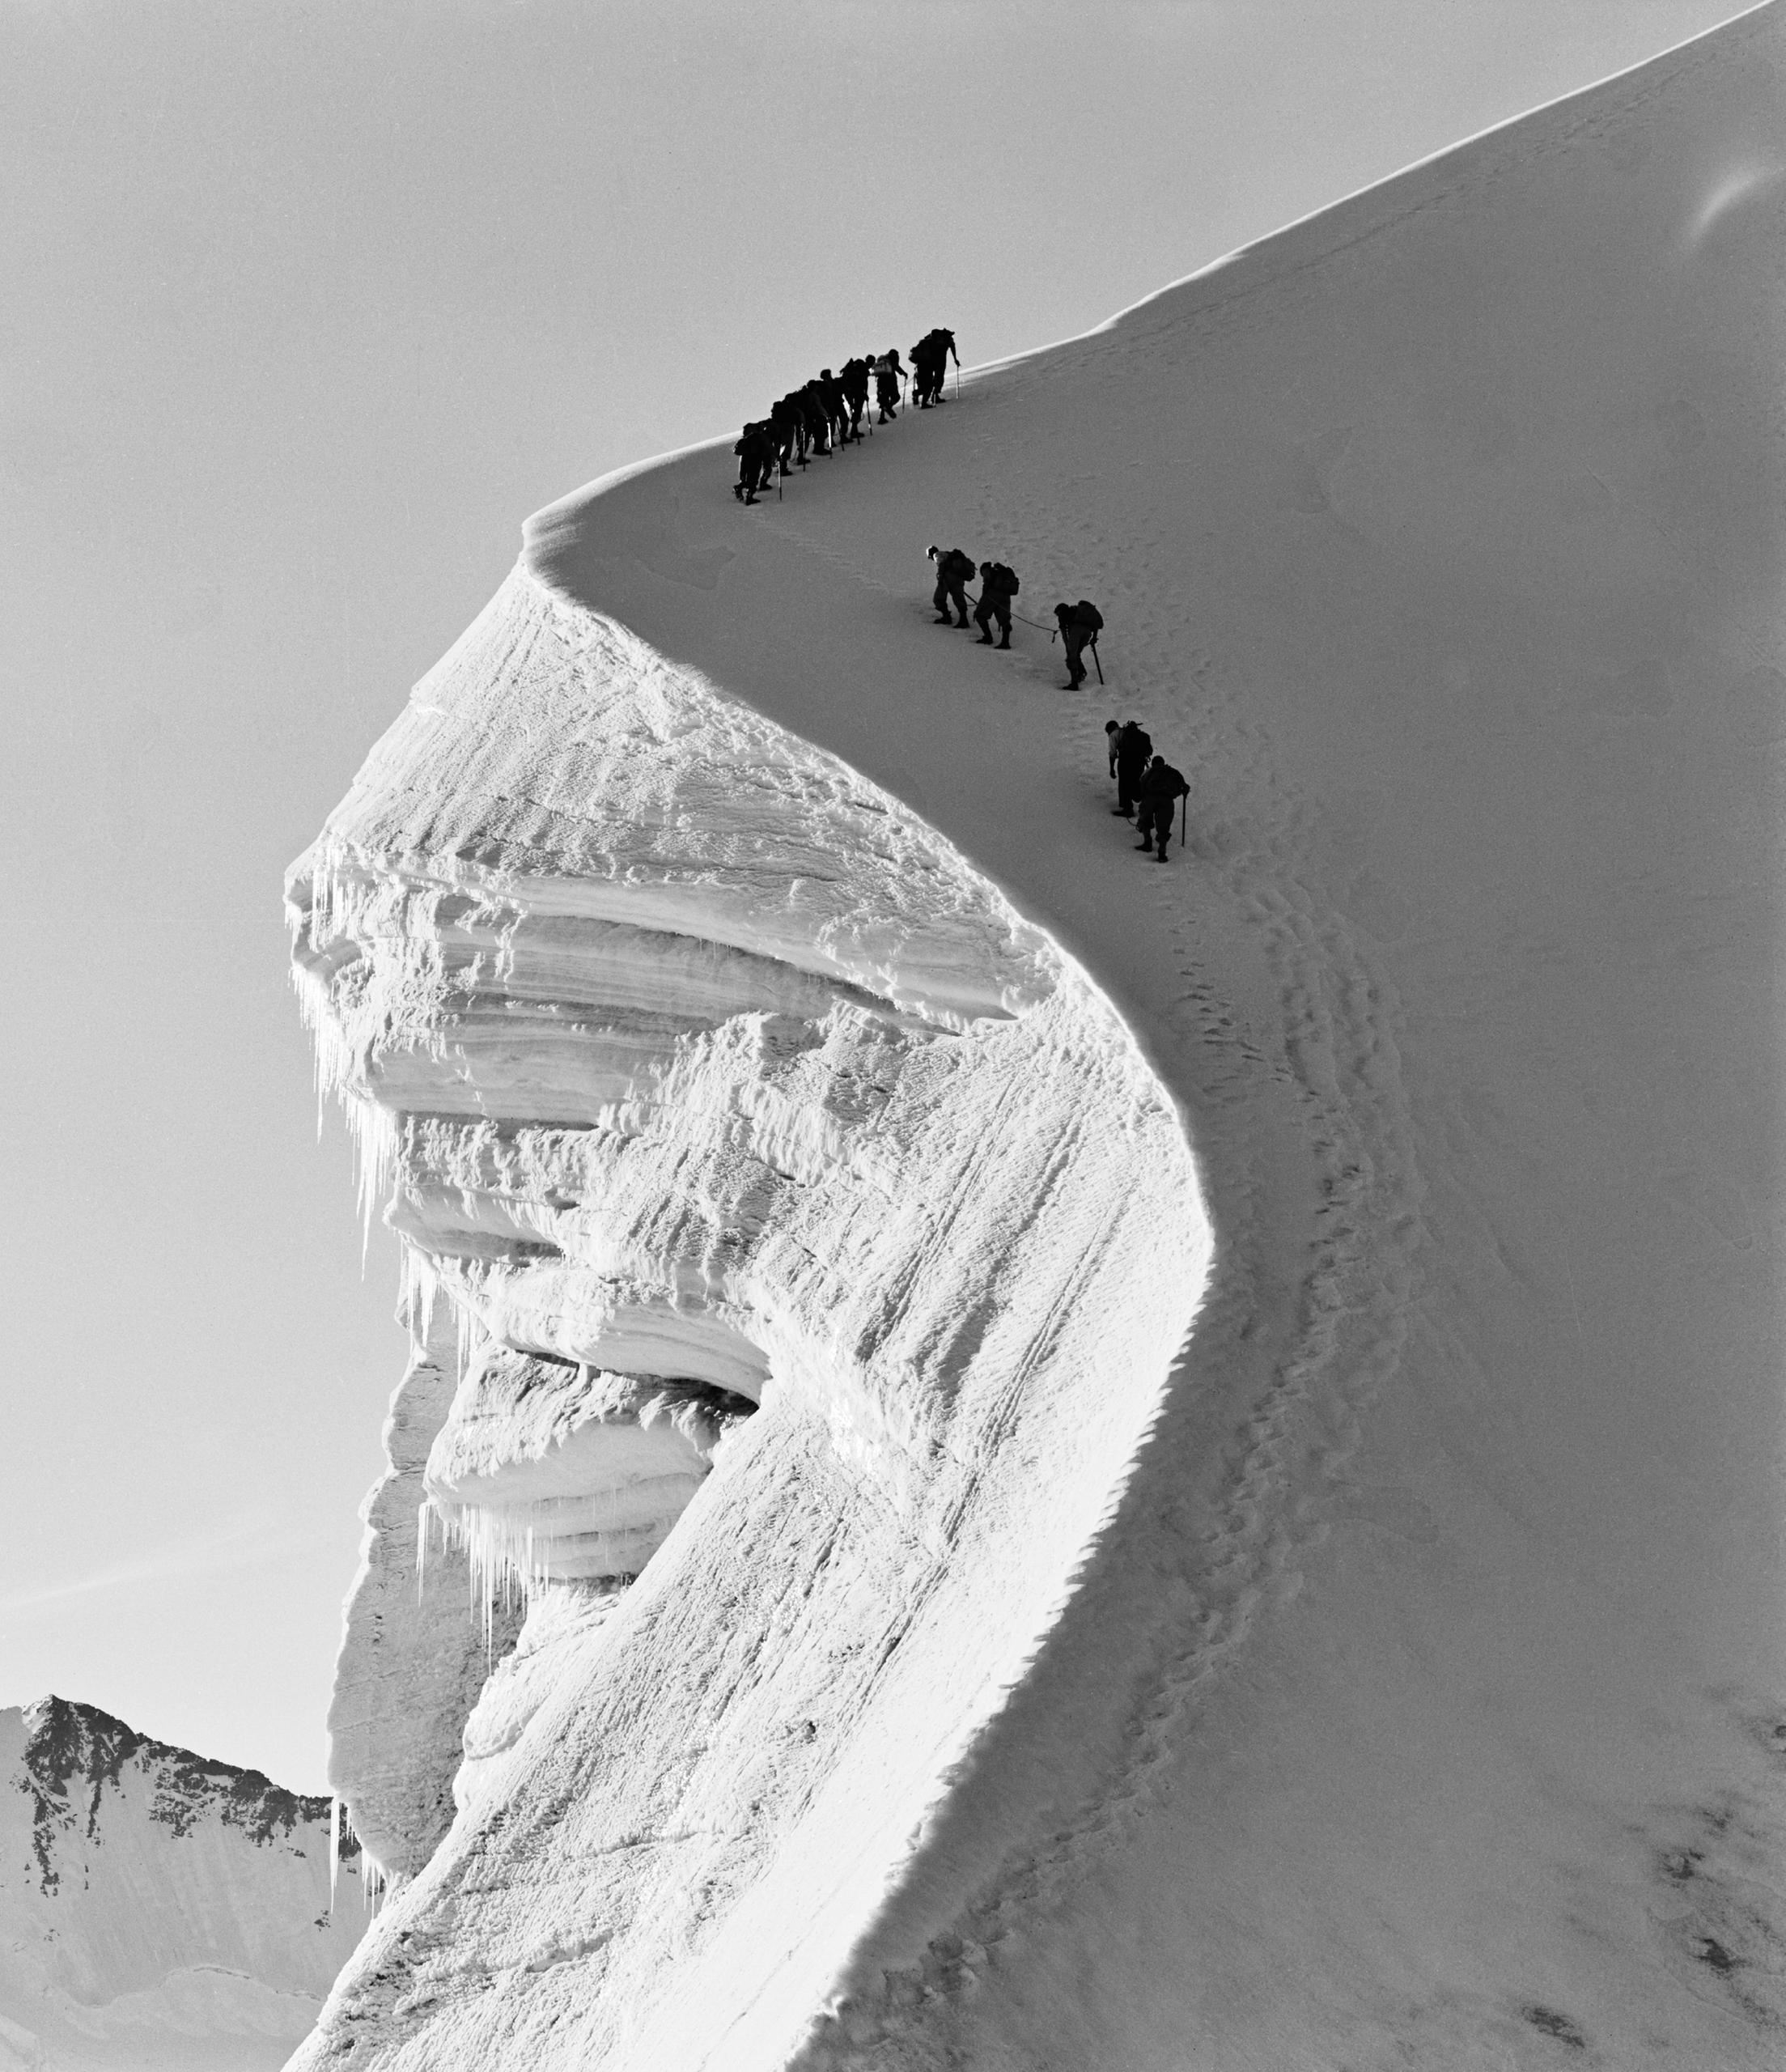 صورة بالأبيض والأسود لمجموعة تسلق مترابطة بالحبال في مرتفعات جبلية